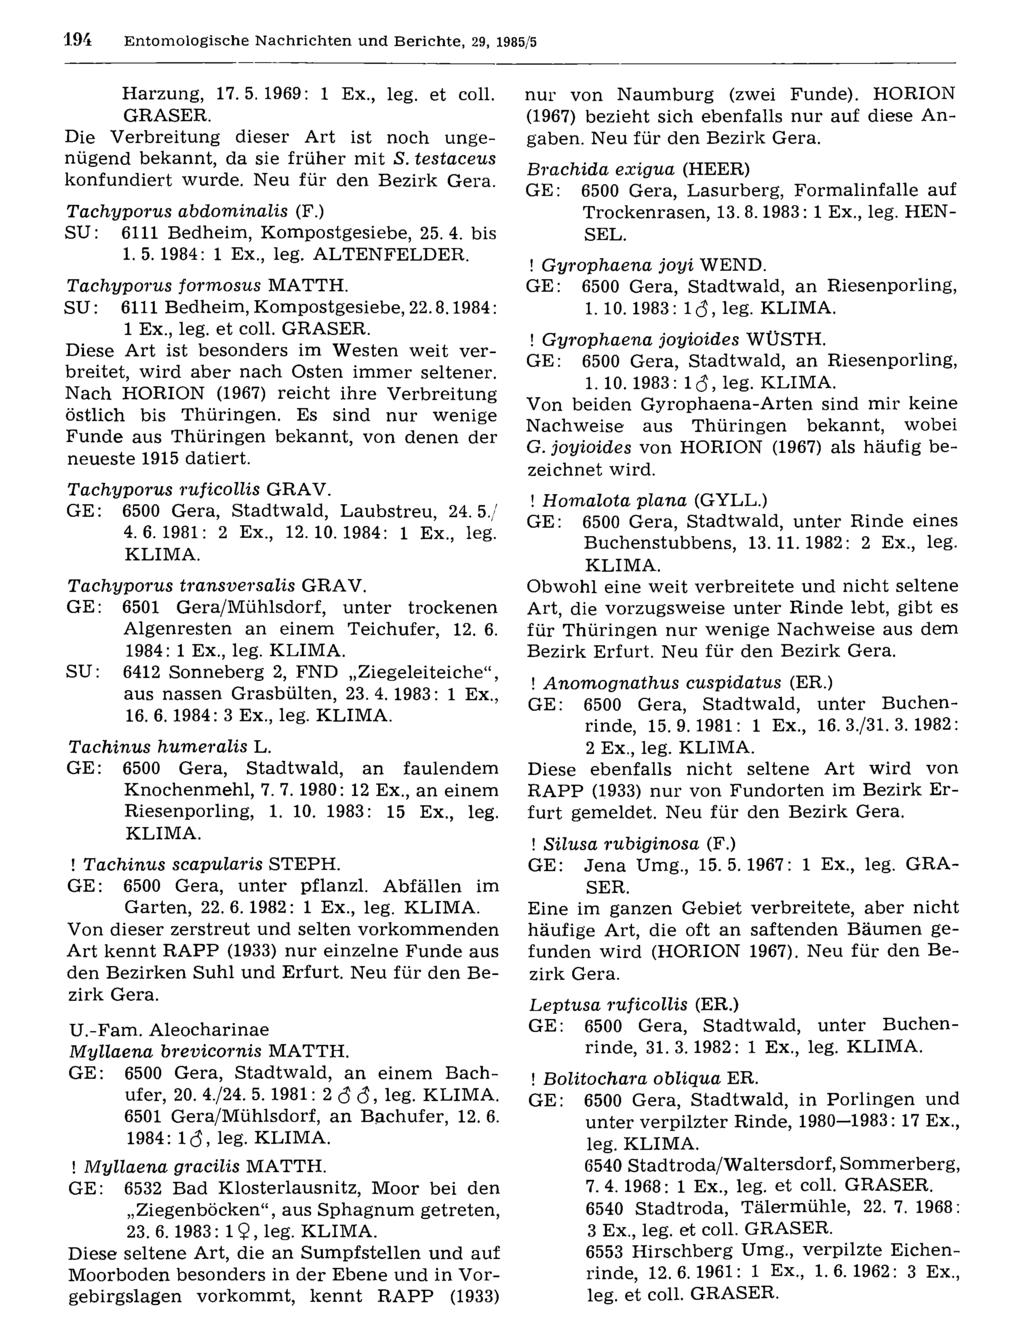 194 Entom ologische N achrichten und Berichte, 29, 1985/5 Entomologische Nachrichten und Berichte; download unter www.biologiezentrum.at Harzung, 17.5.1969: 1 E x, leg. et coll. GRASER.